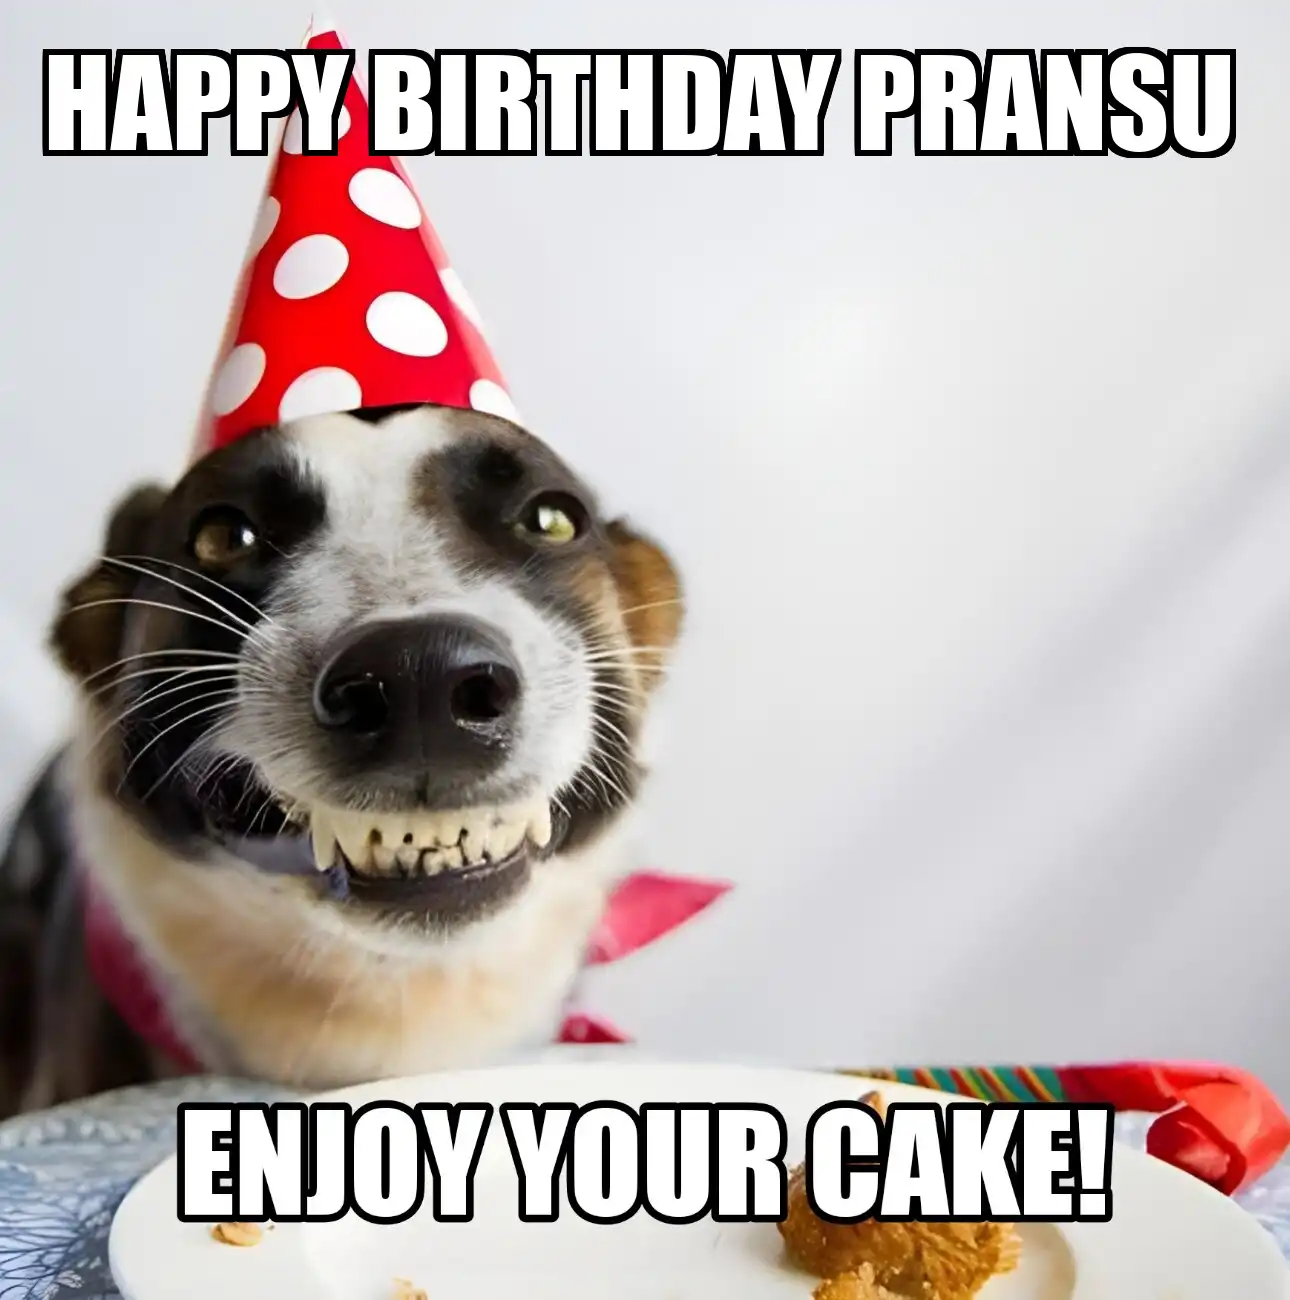 Happy Birthday Pransu Enjoy Your Cake Dog Meme